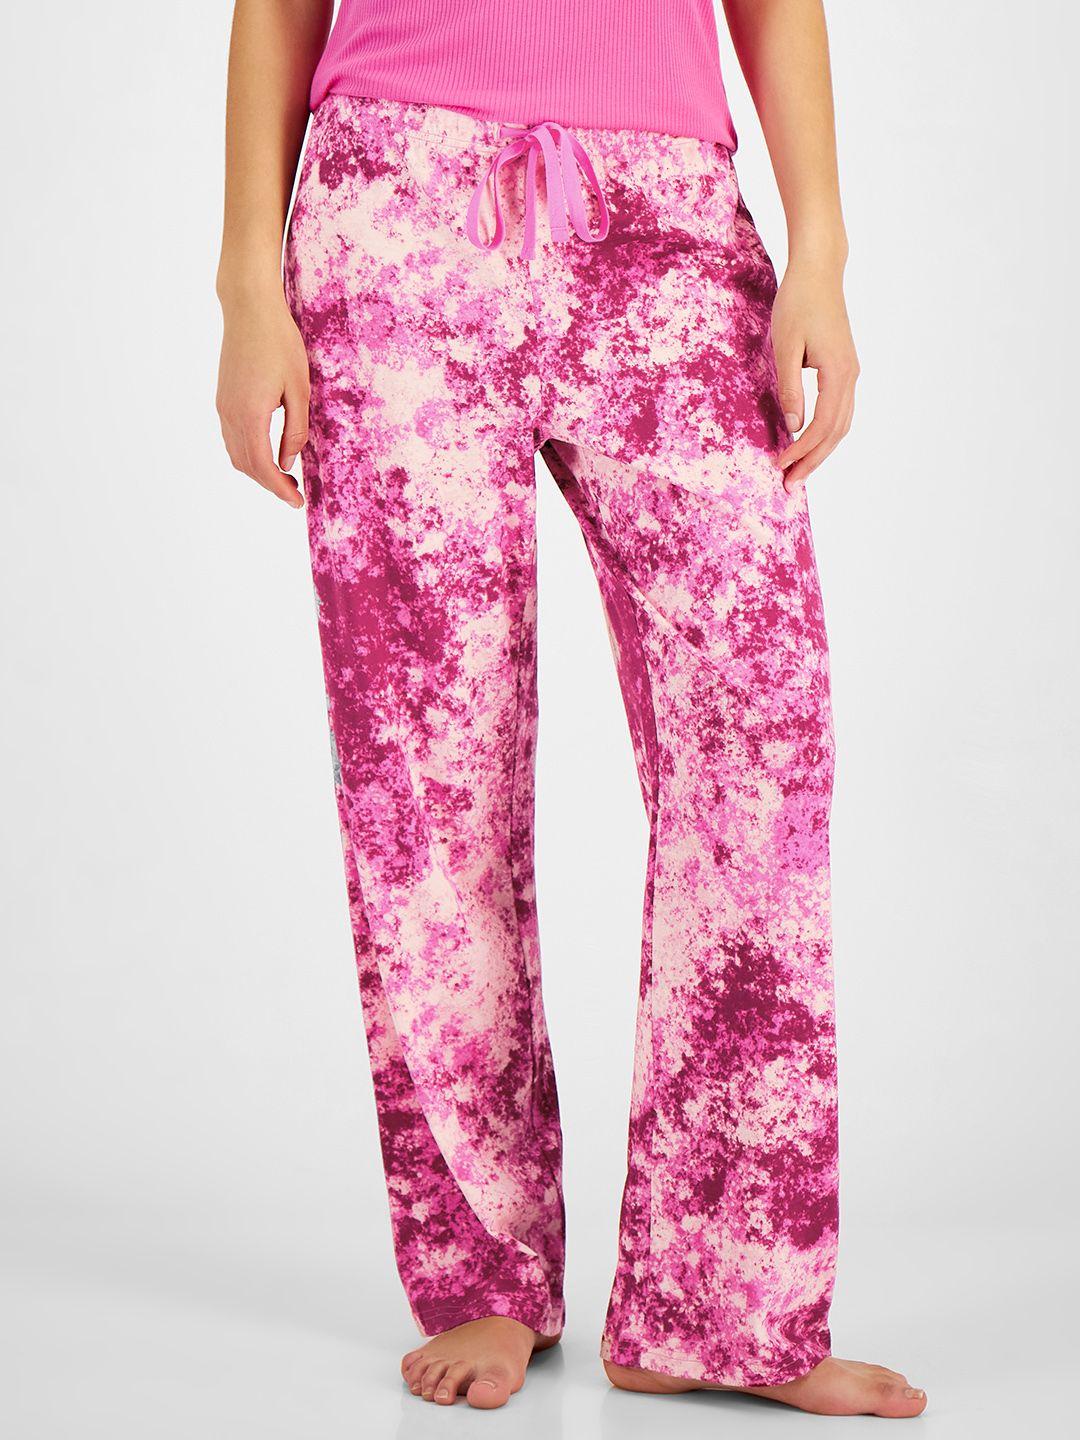 macy's jenni women fuchsia pink & white dyed lounge pants